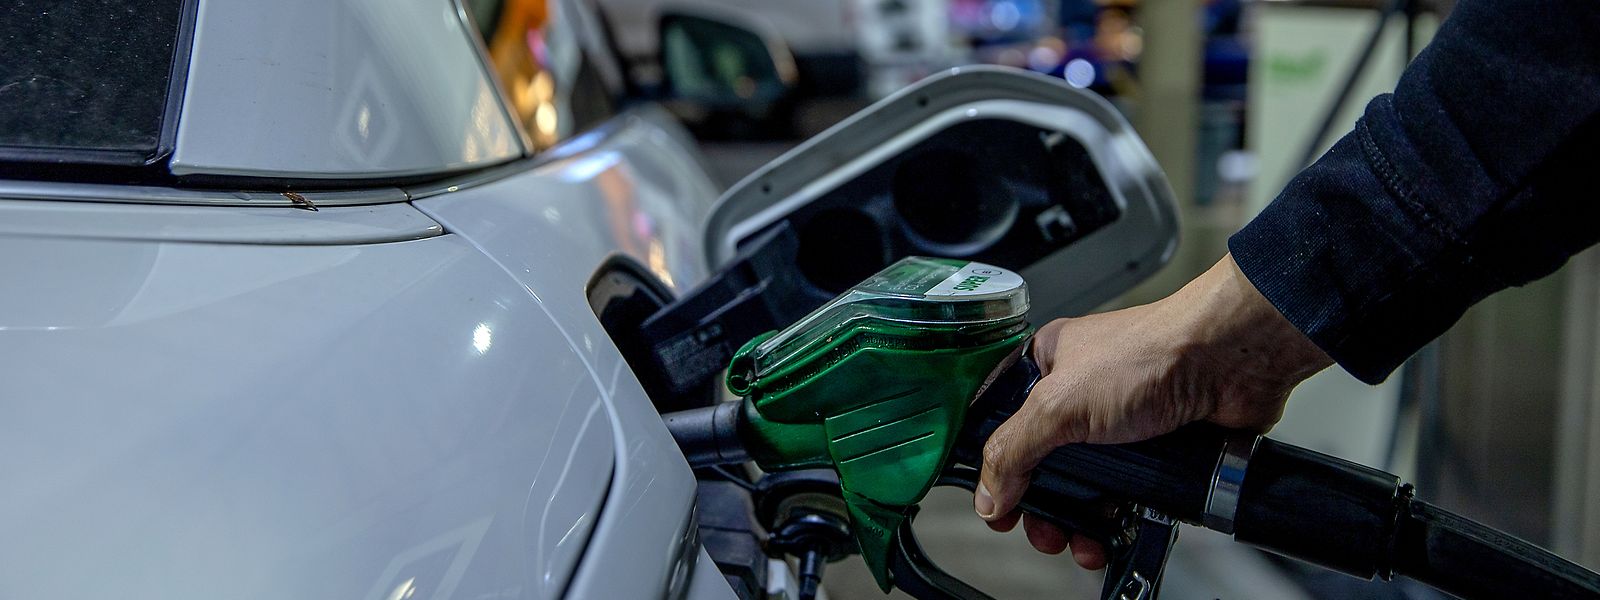 Par rapport au mois de février, les prix ont augmenté de 15,4% pour le diesel et de 9,2% pour l'essence au mois de mars.